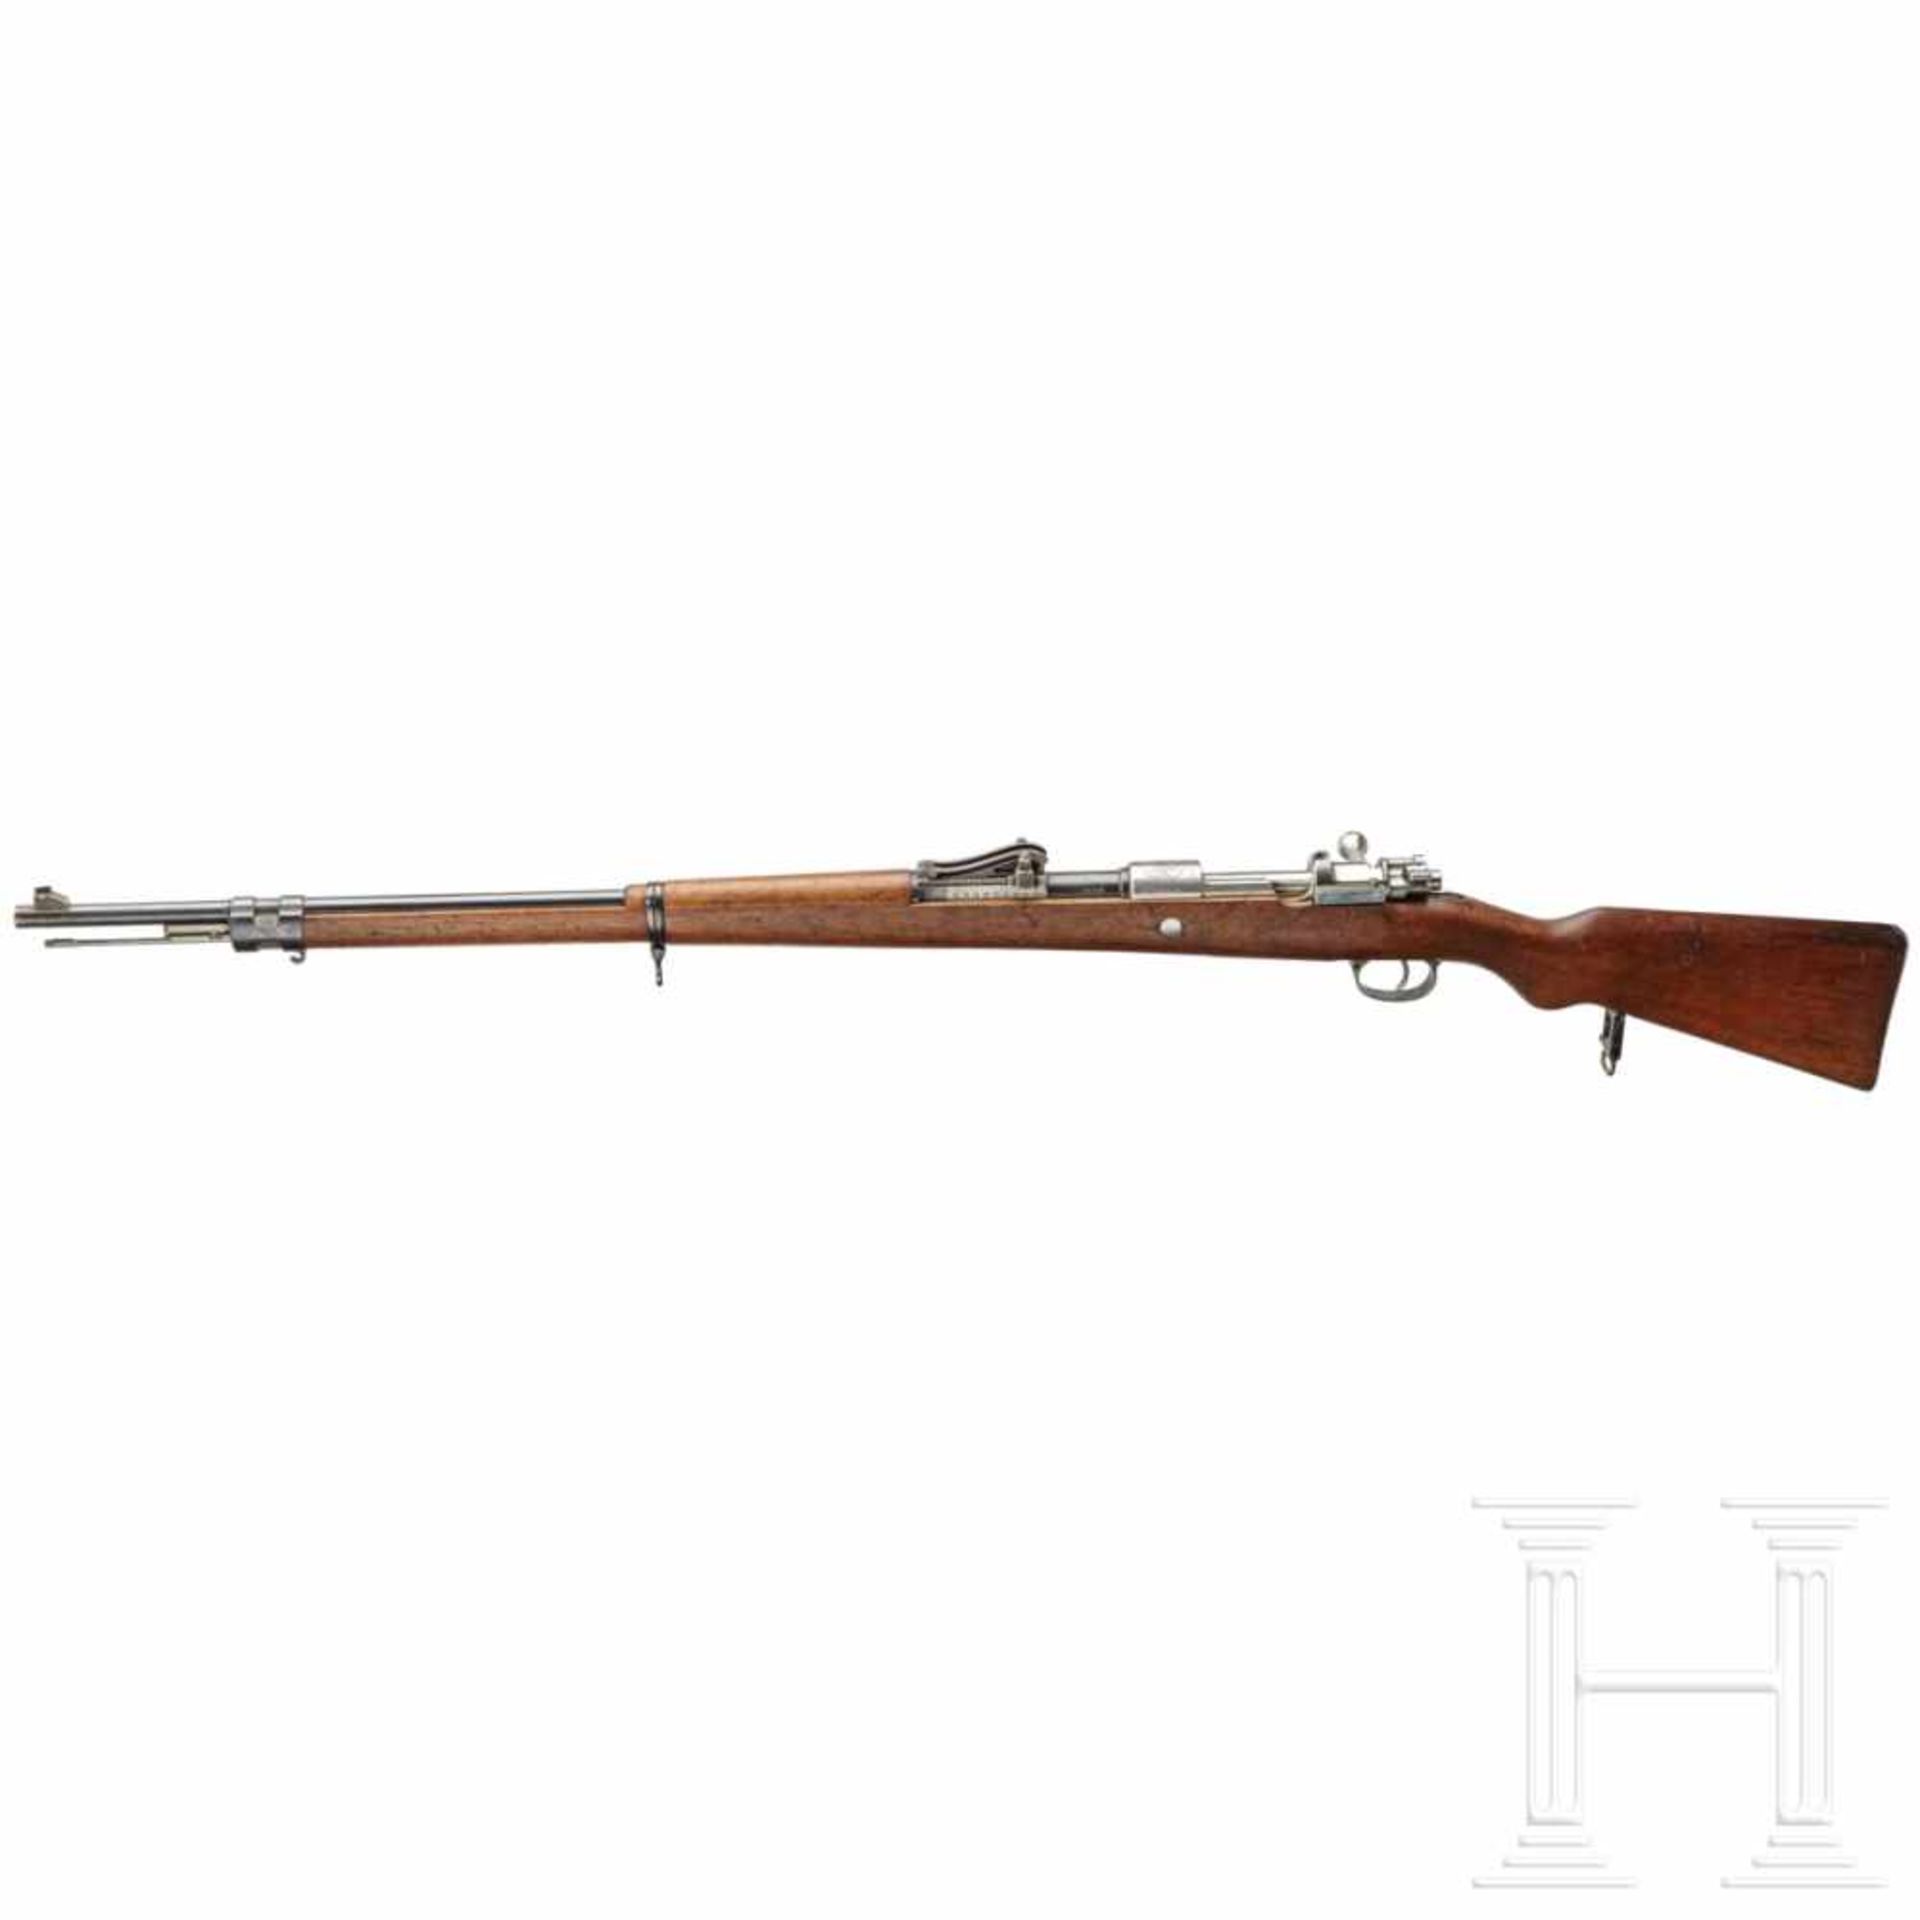 Peru - Gewehr Mauser Mod. 1909Kal. 7,65x53, Nr. 22165, nummerngleich. Blanker Lauf. Fünfschüssig. - Bild 2 aus 3